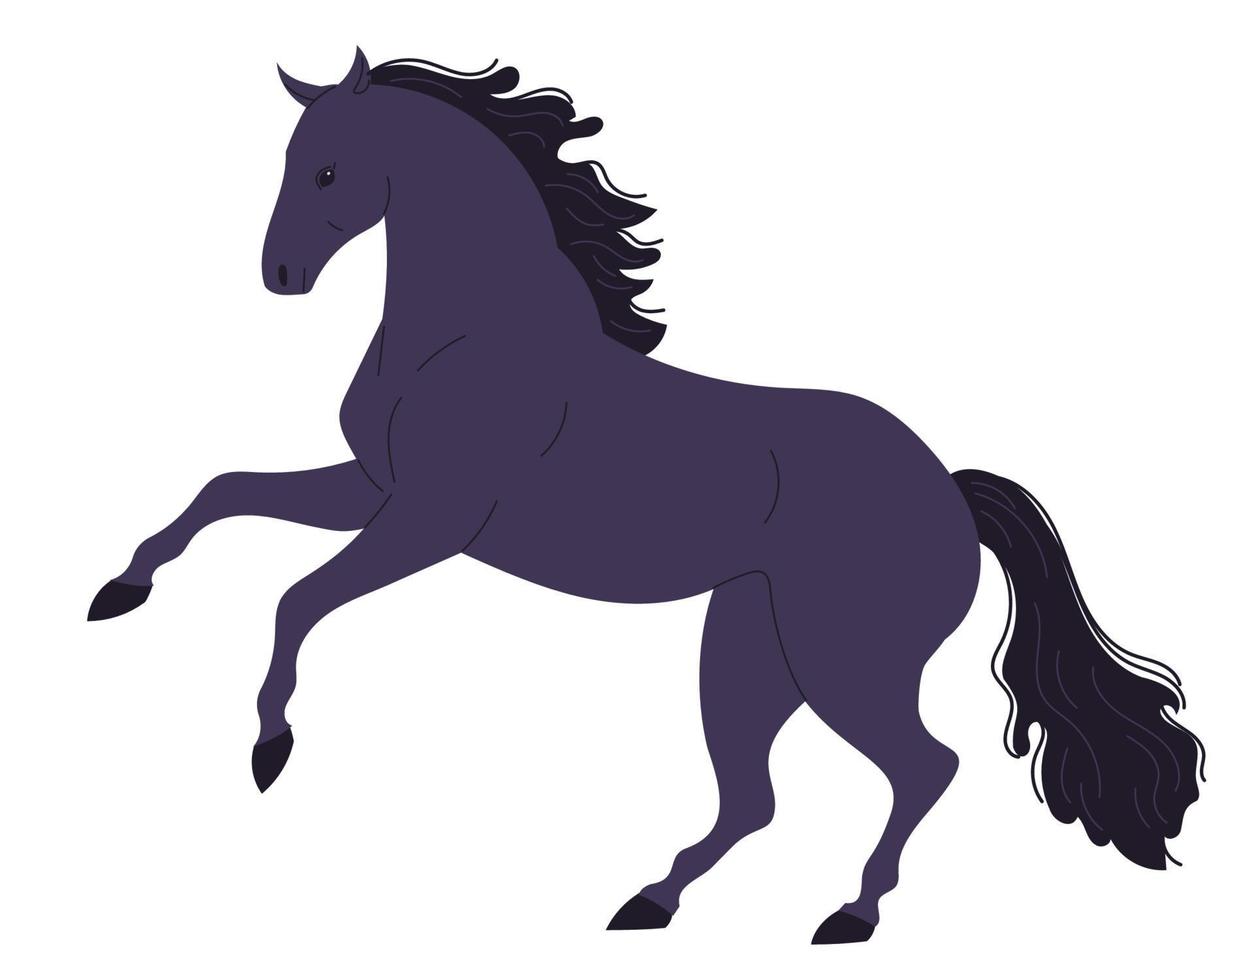 dunkles, energisches Pferd mit erhobenen Vorderhufen auf den Hinterbeinen. vektor